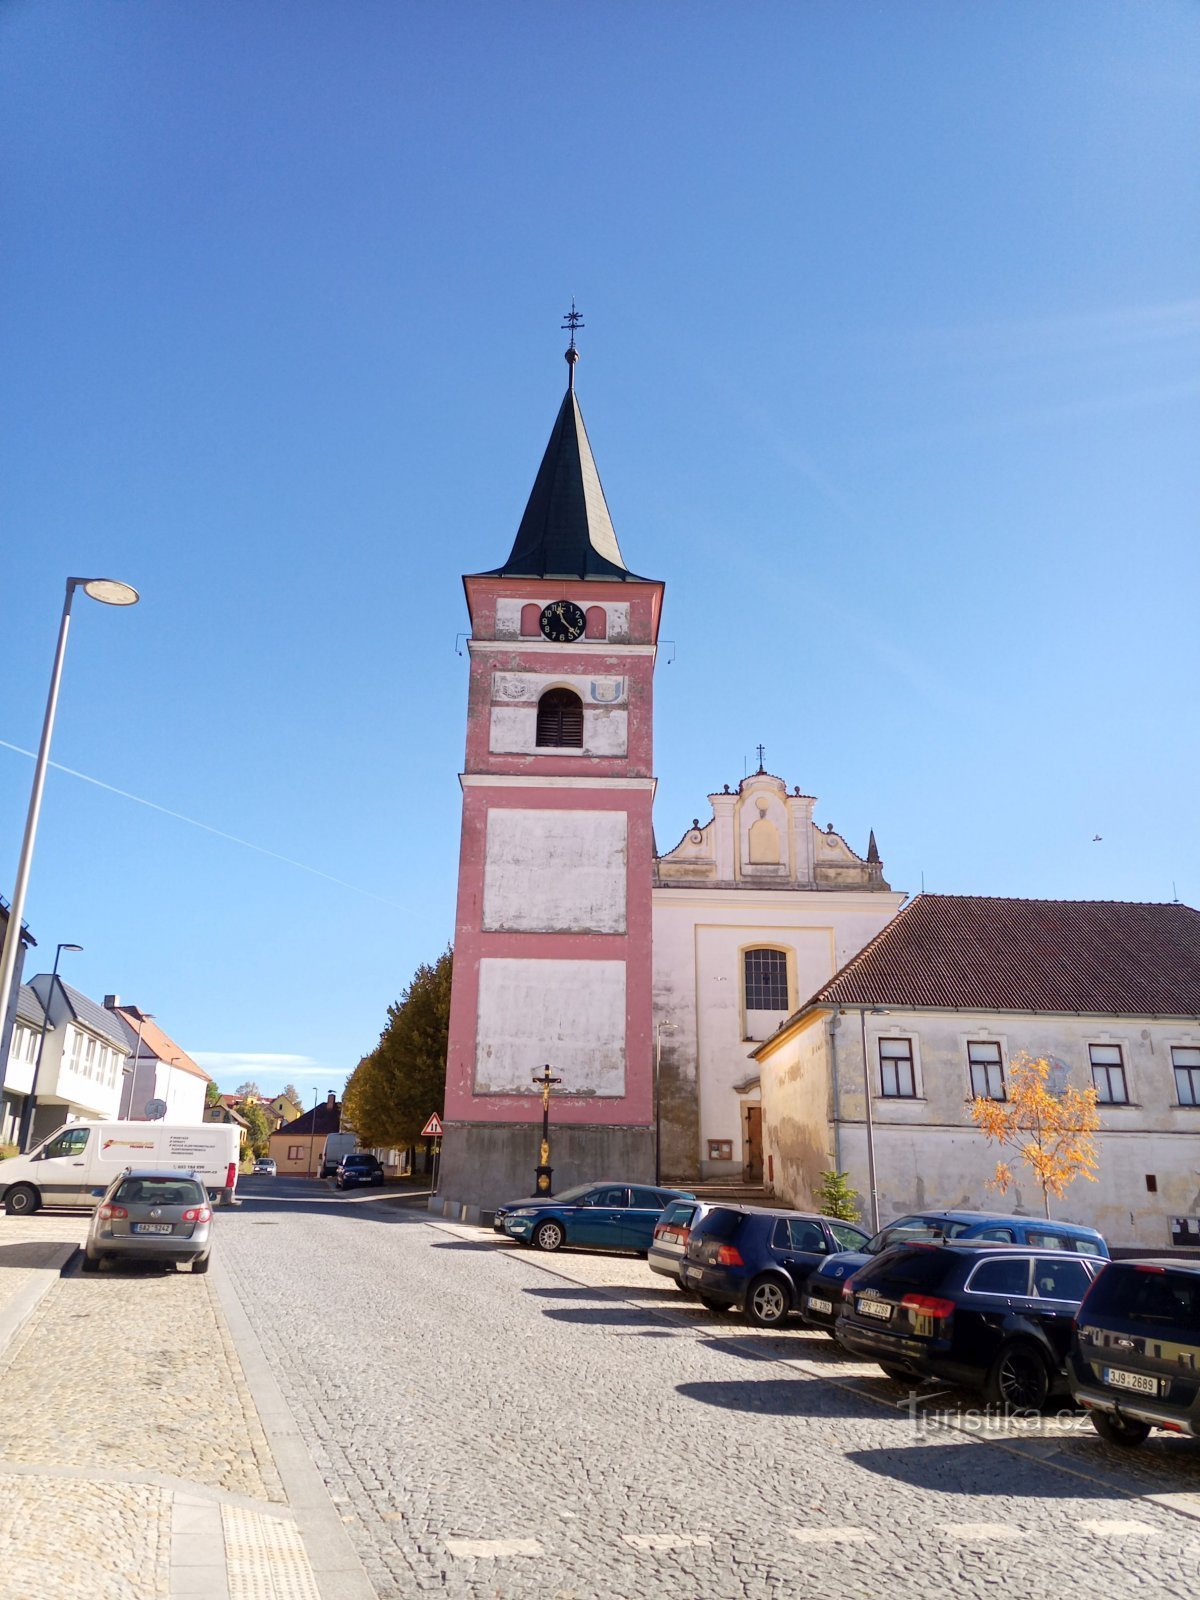 2. Der freistehende prismatische Glockenturm in Černovice wurde im Barockstil umgebaut, nachdem Hr